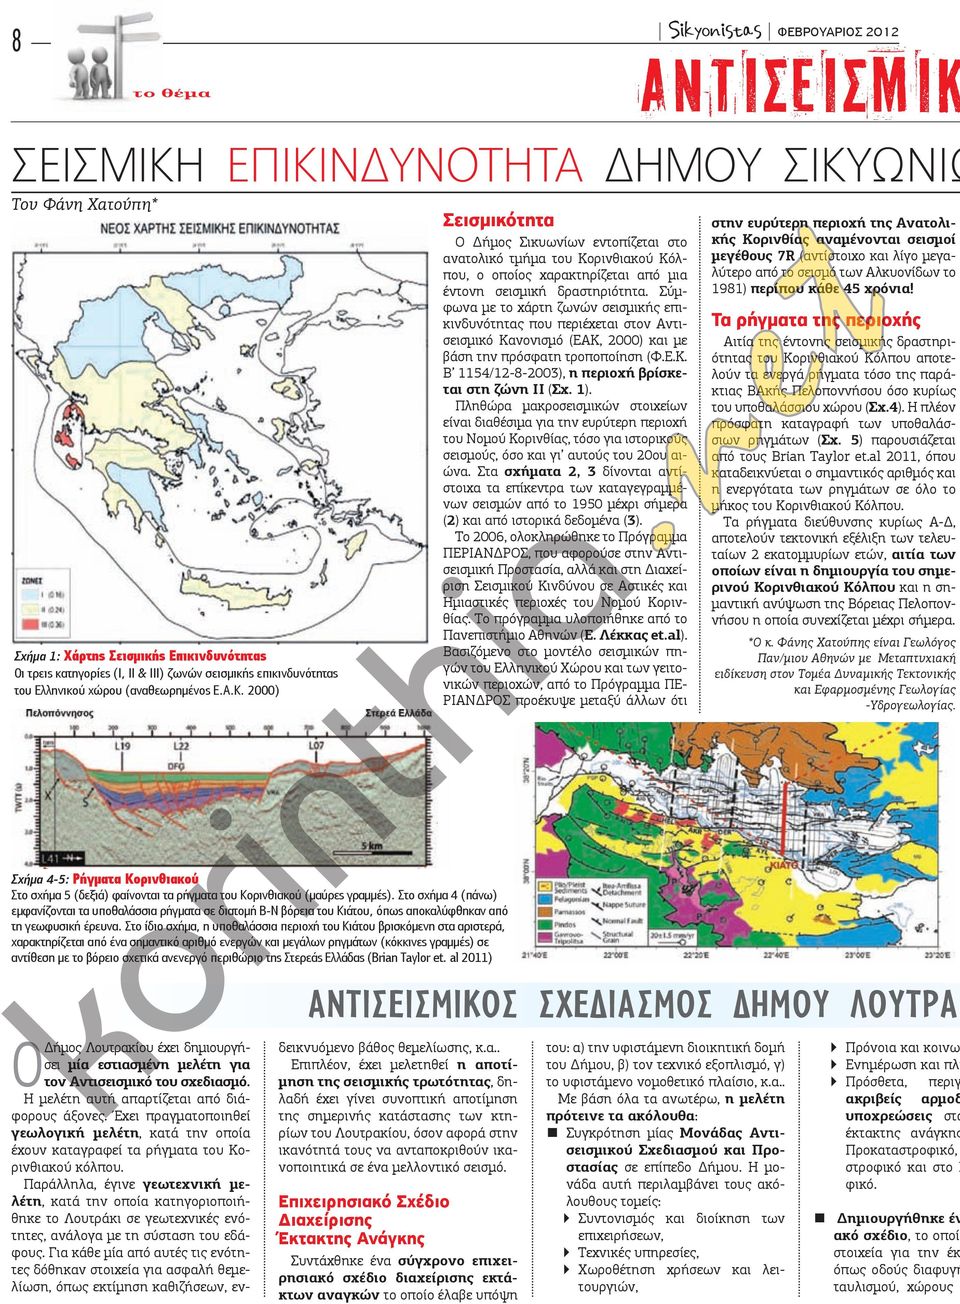 2000) Σεισμικότητα Ο Δήμος Σικυωνίων εντοπίζεται στο ανατολικό τμήμα του Κορινθιακού Κόλπου, ο οποίος χαρακτηρίζεται από μια έντονη σεισμική δραστηριότητα.